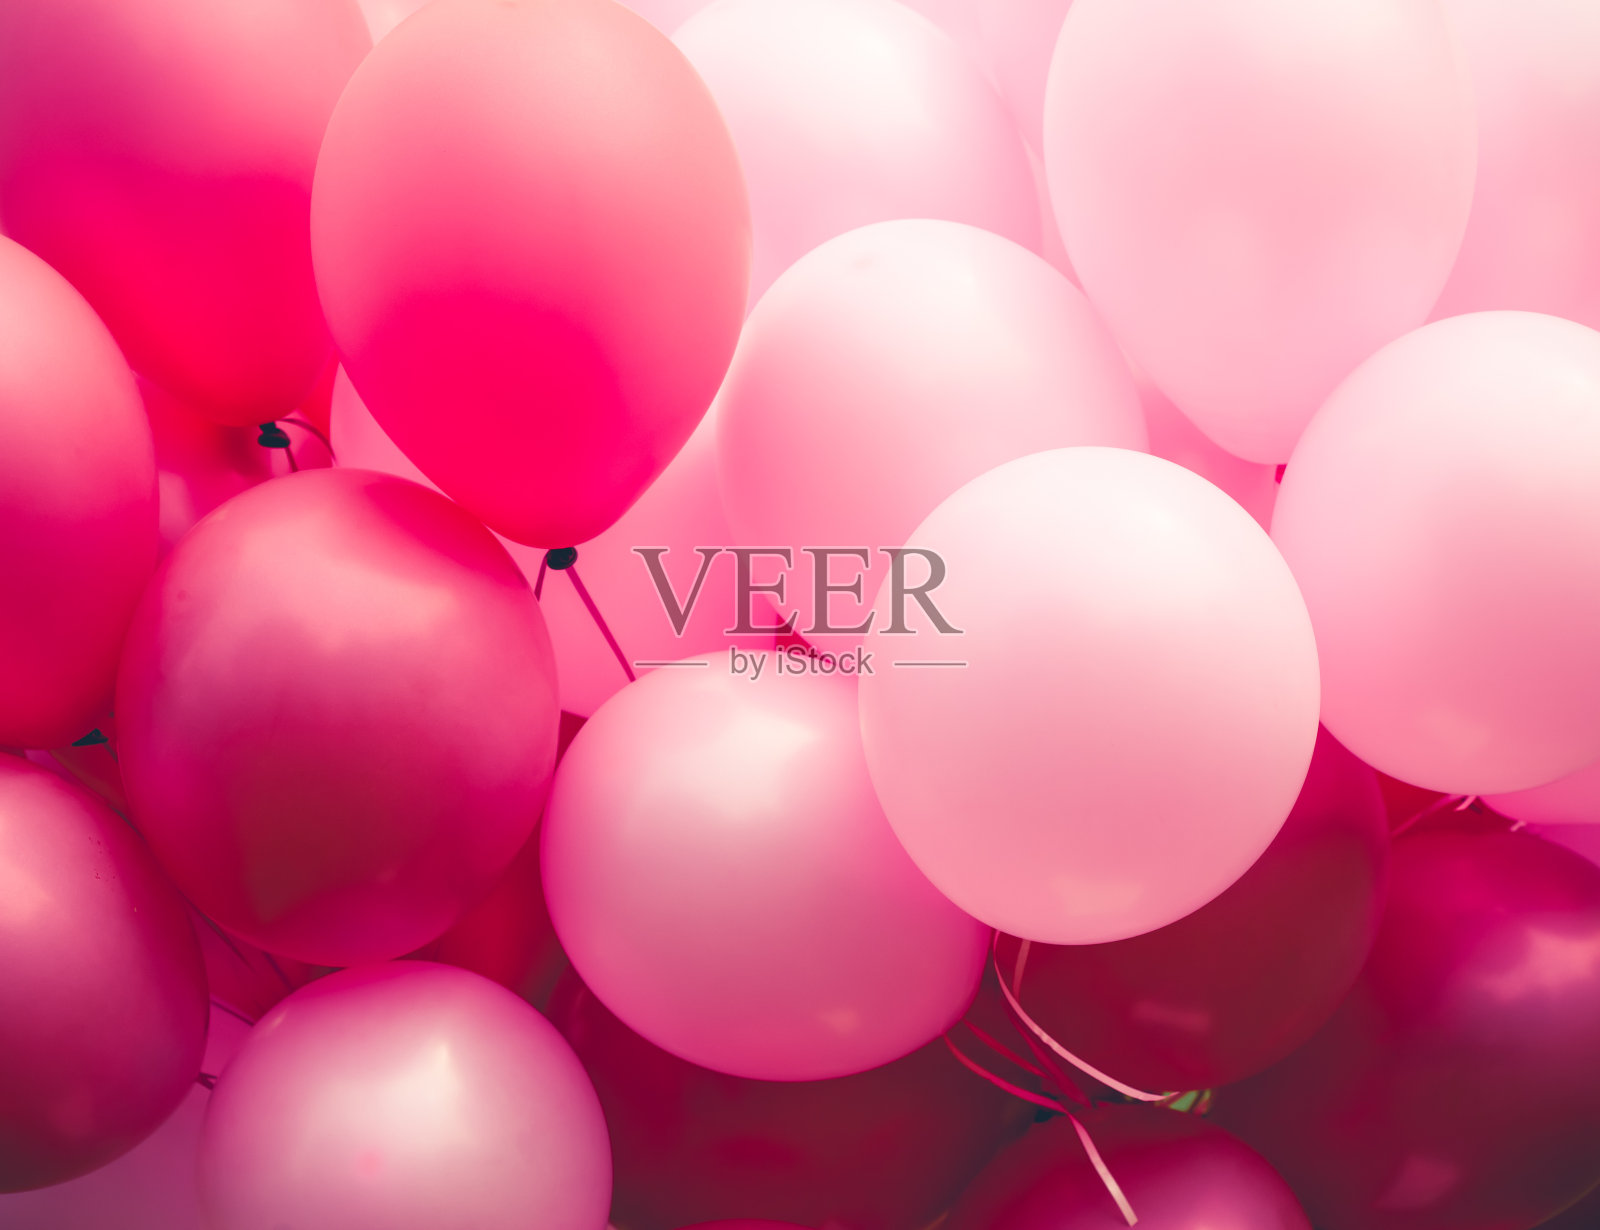 一组粉红色的气球背景图片素材